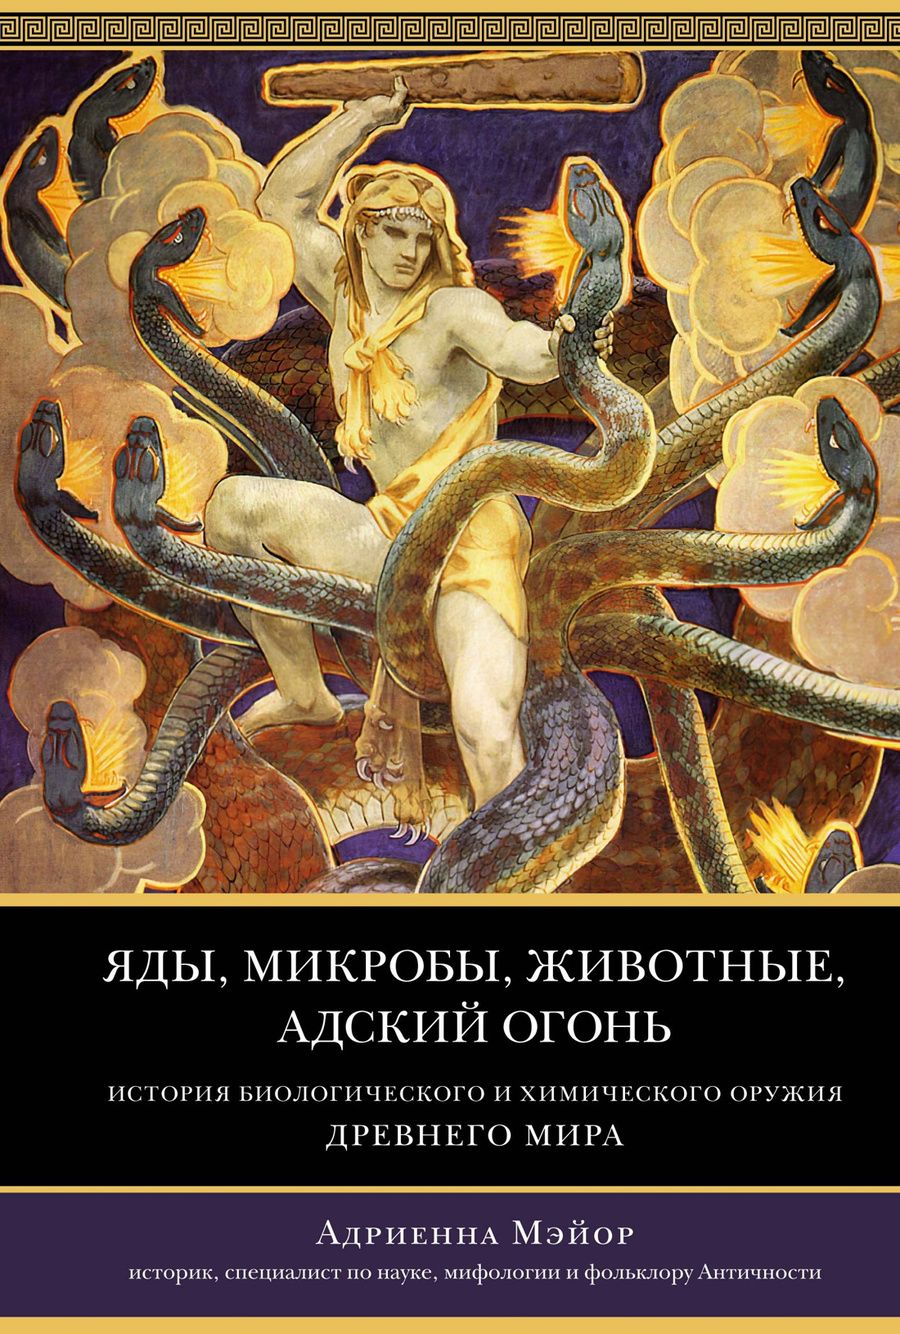 Обложка книги "Мэйор: Яды, микробы, животные, адский огонь. История биологического и химического оружия Древнего мира"